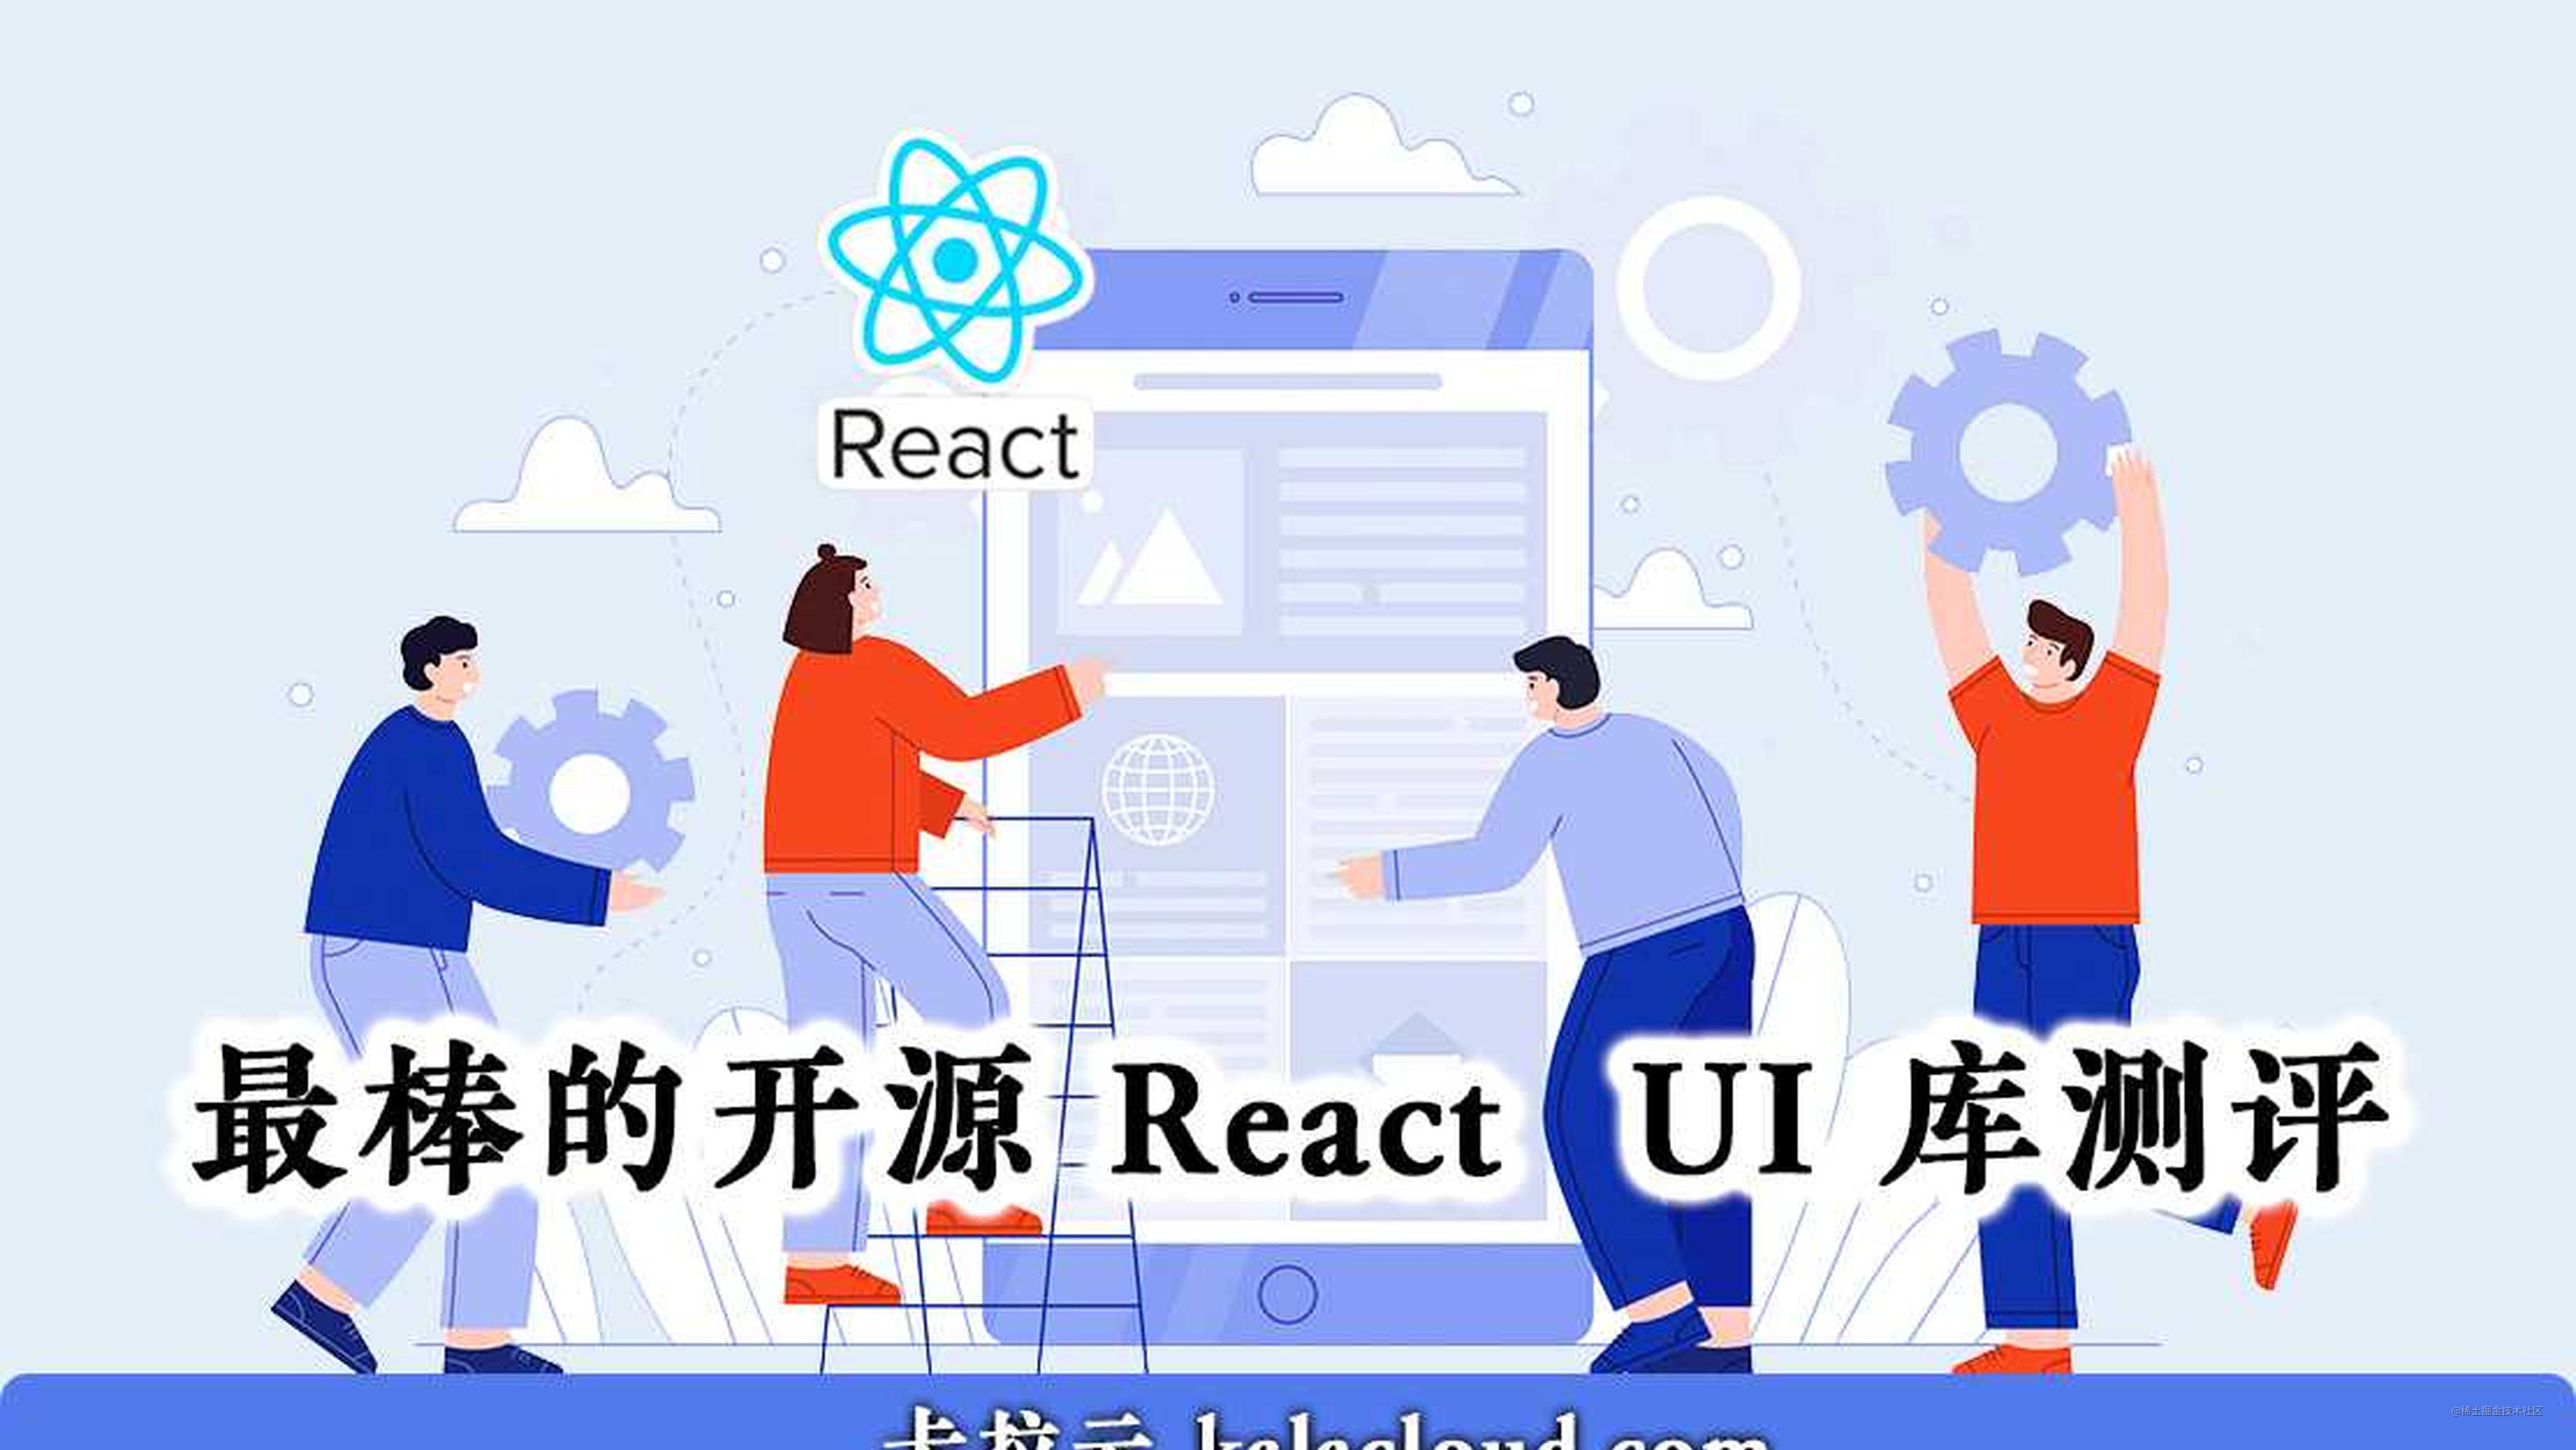 7 款最棒的开源 React  UI 库测评 - 特别针对国内使用场景推荐